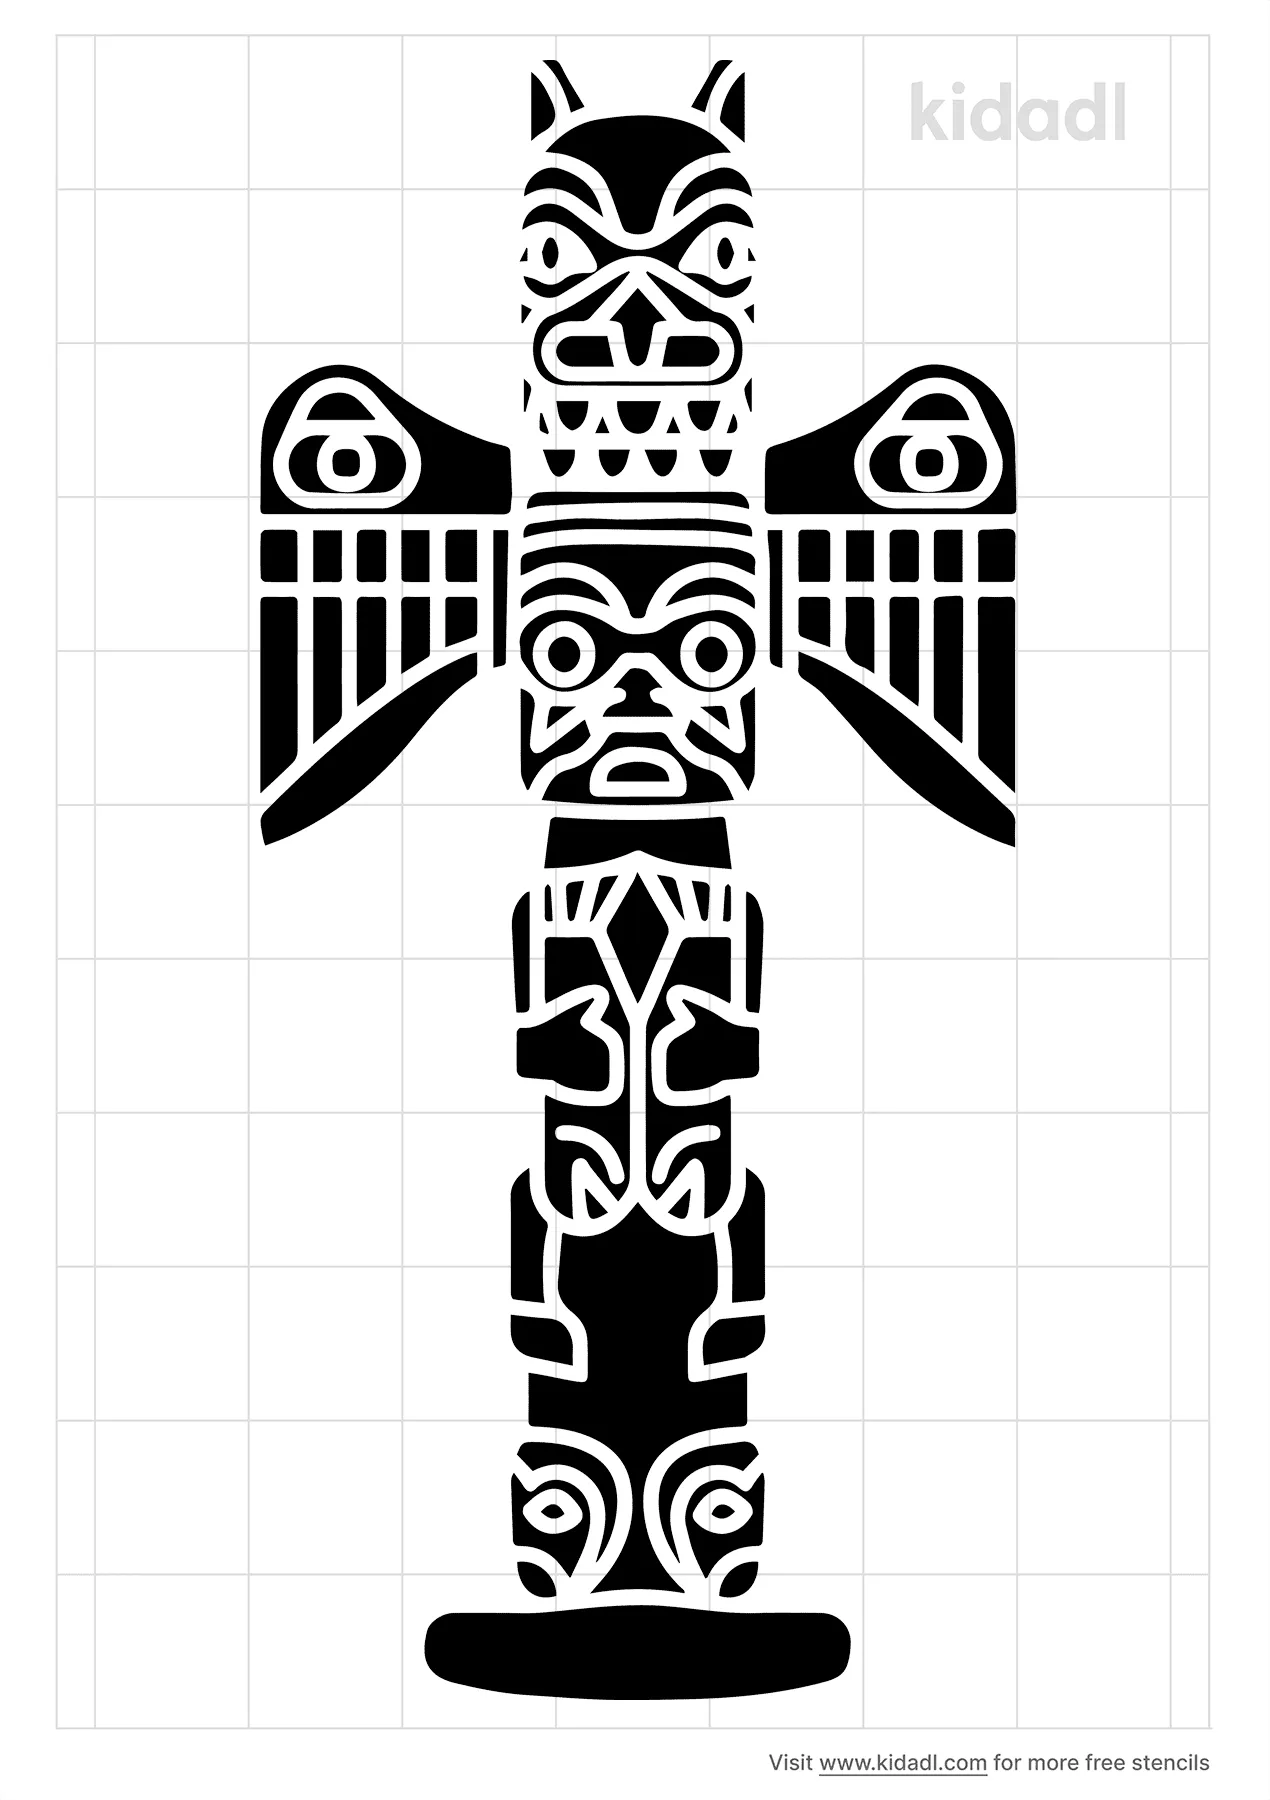 Free Totem Pole Stencil | Stencil Printables | Kidadl